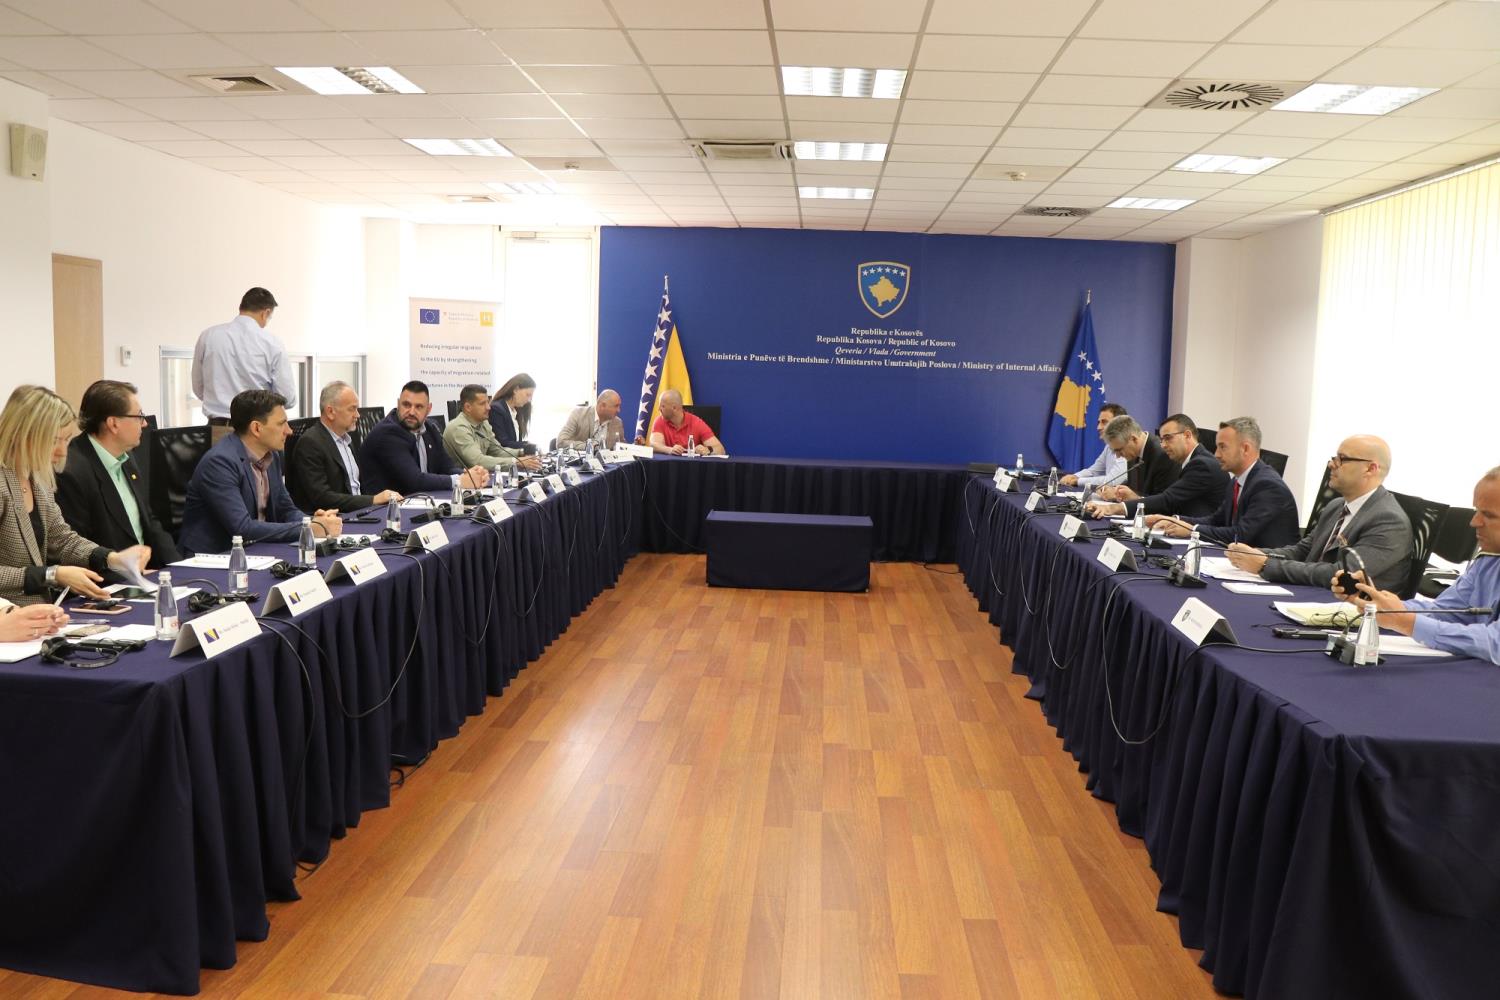 Zëvendësministri Blerim Gashani priti në takim delegacionin nga Bosnja e Hercegovina